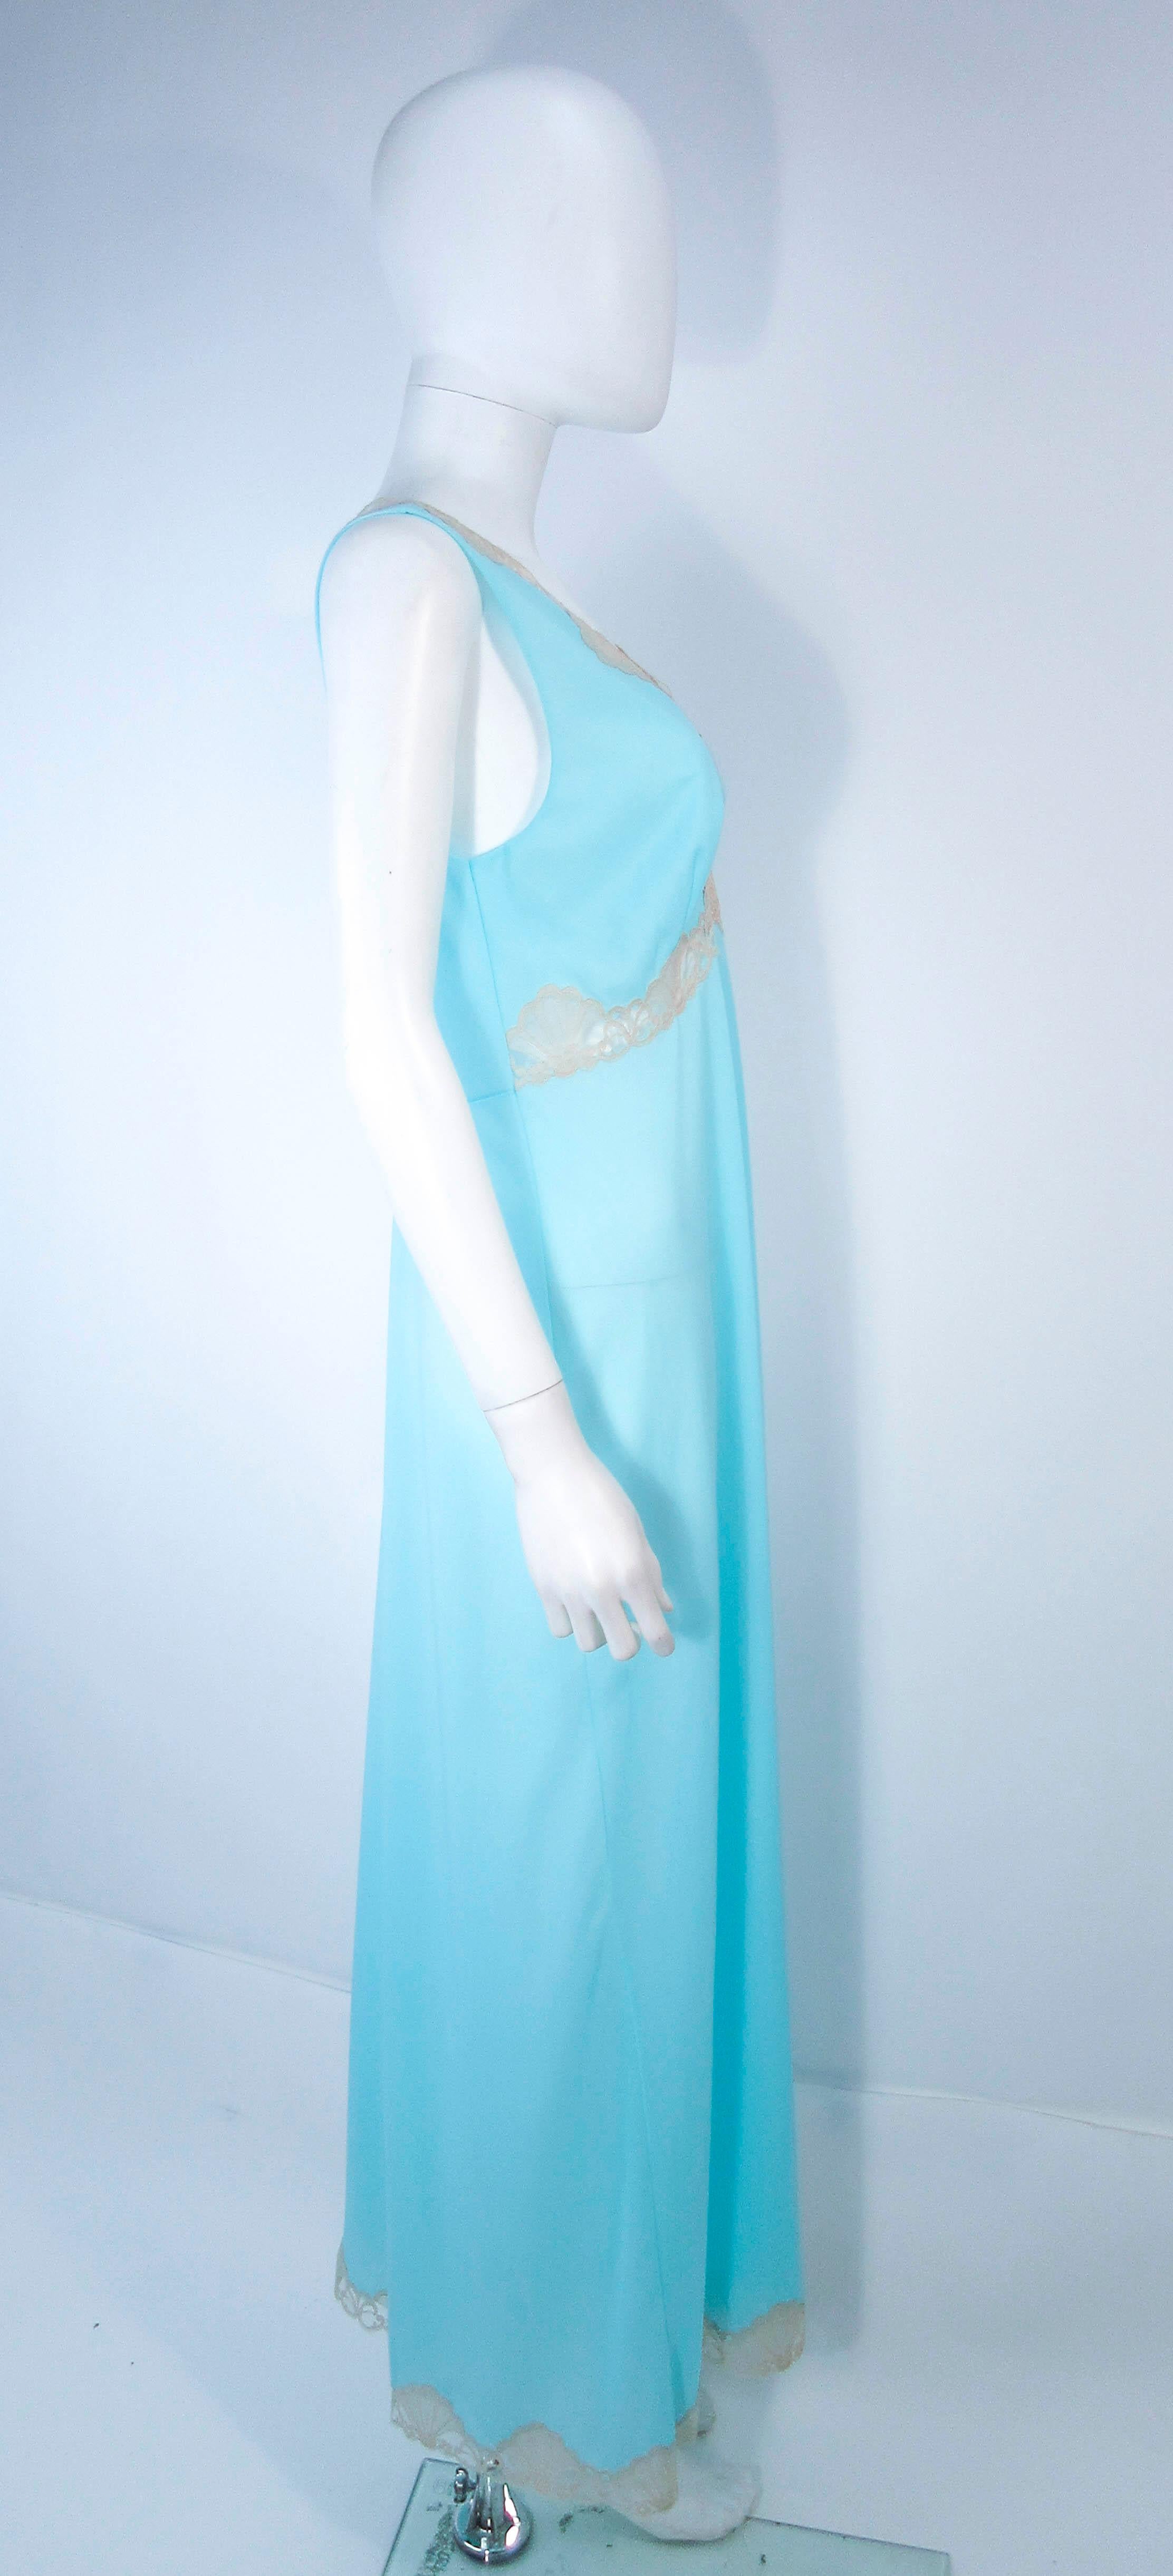 EMILIO PUCCI 'Formfit Rogers' Light Blue Nude Lace Trim Slip Dress NWT Size M 1